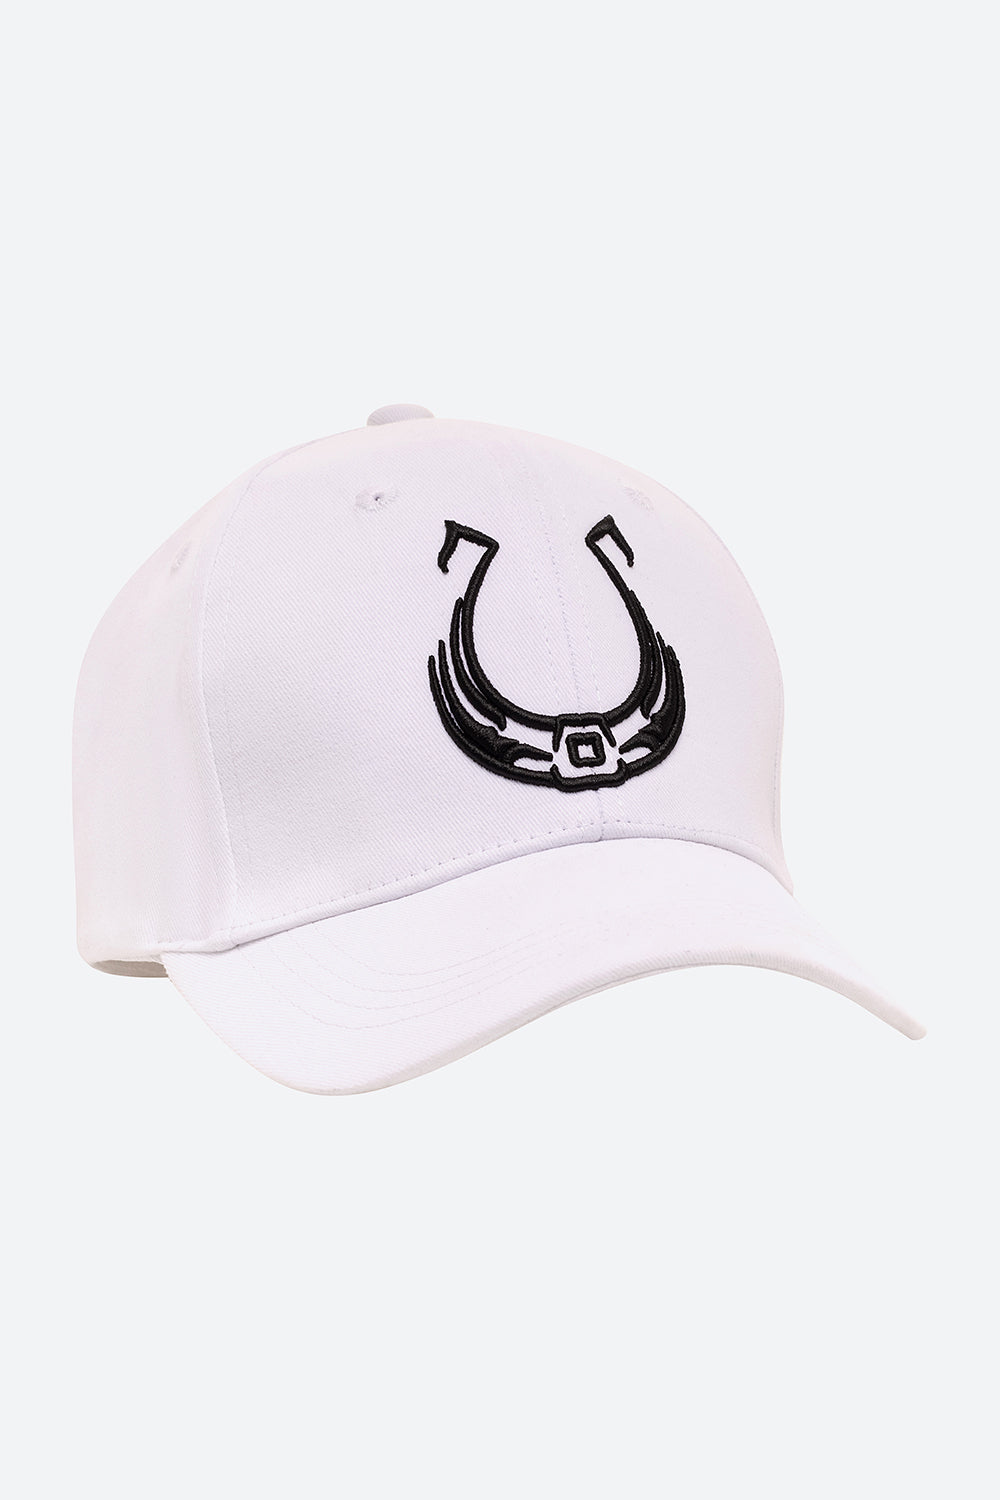 Iconic Brands Ladies Hats, Ladies Iconic Brands Snapback, Iconic Brands  Caps